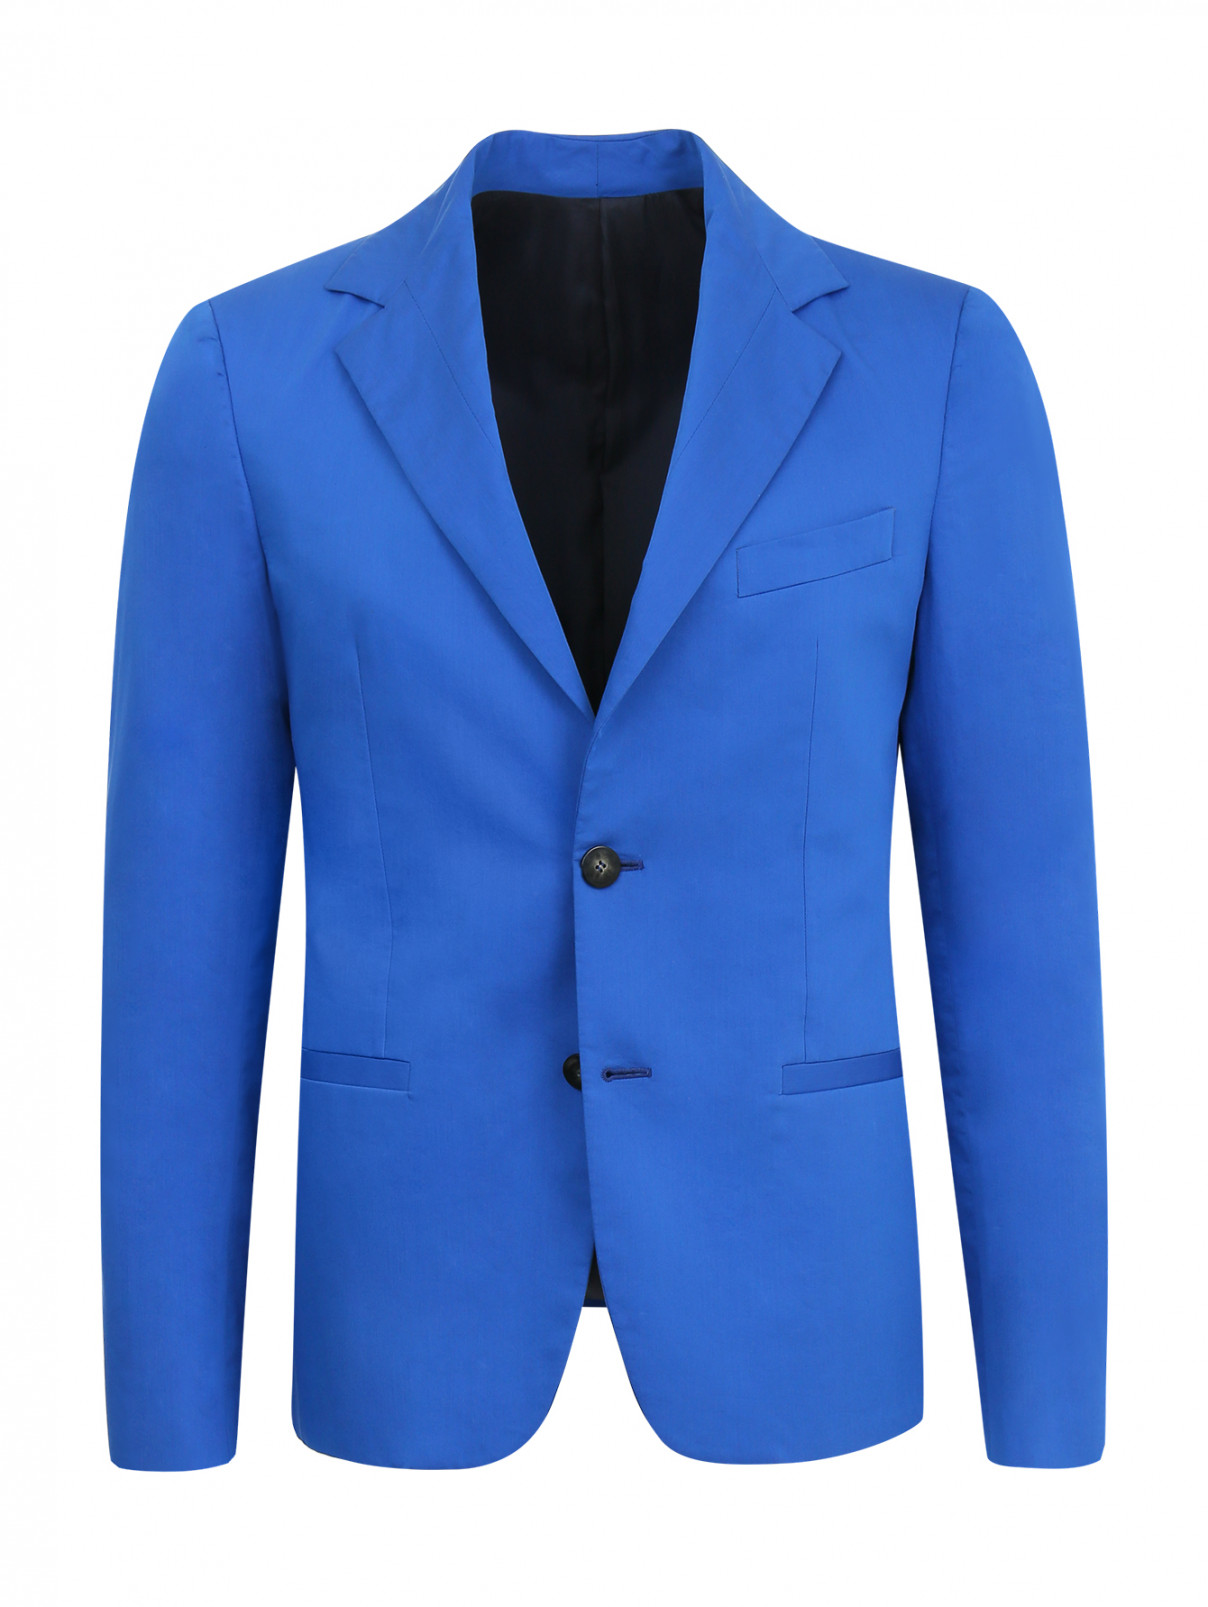 Голубой пиджак